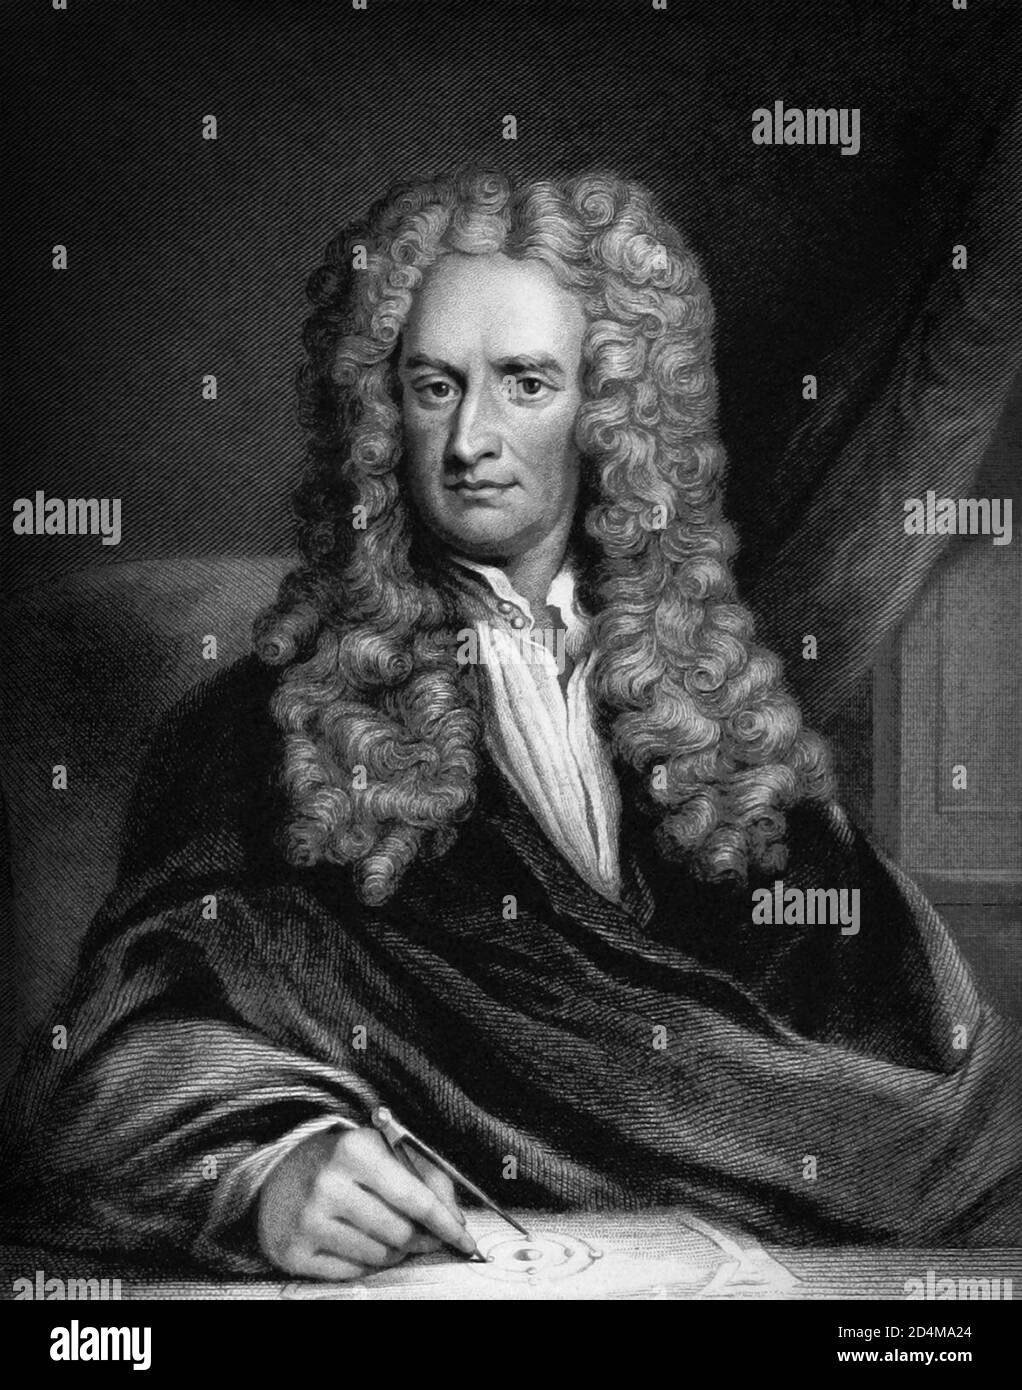 Sir Isaac Newton PRS (1642/43-1726/27) war ein englischer Mathematiker, Physiker, Astronom, Theologe und Autor (in seiner eigenen Zeit als "Naturphilosoph" beschrieben), der weithin als einer der einflussreichsten Wissenschaftler aller Zeiten und als eine Schlüsselfigur in der wissenschaftlichen Revolution anerkannt ist. Stockfoto